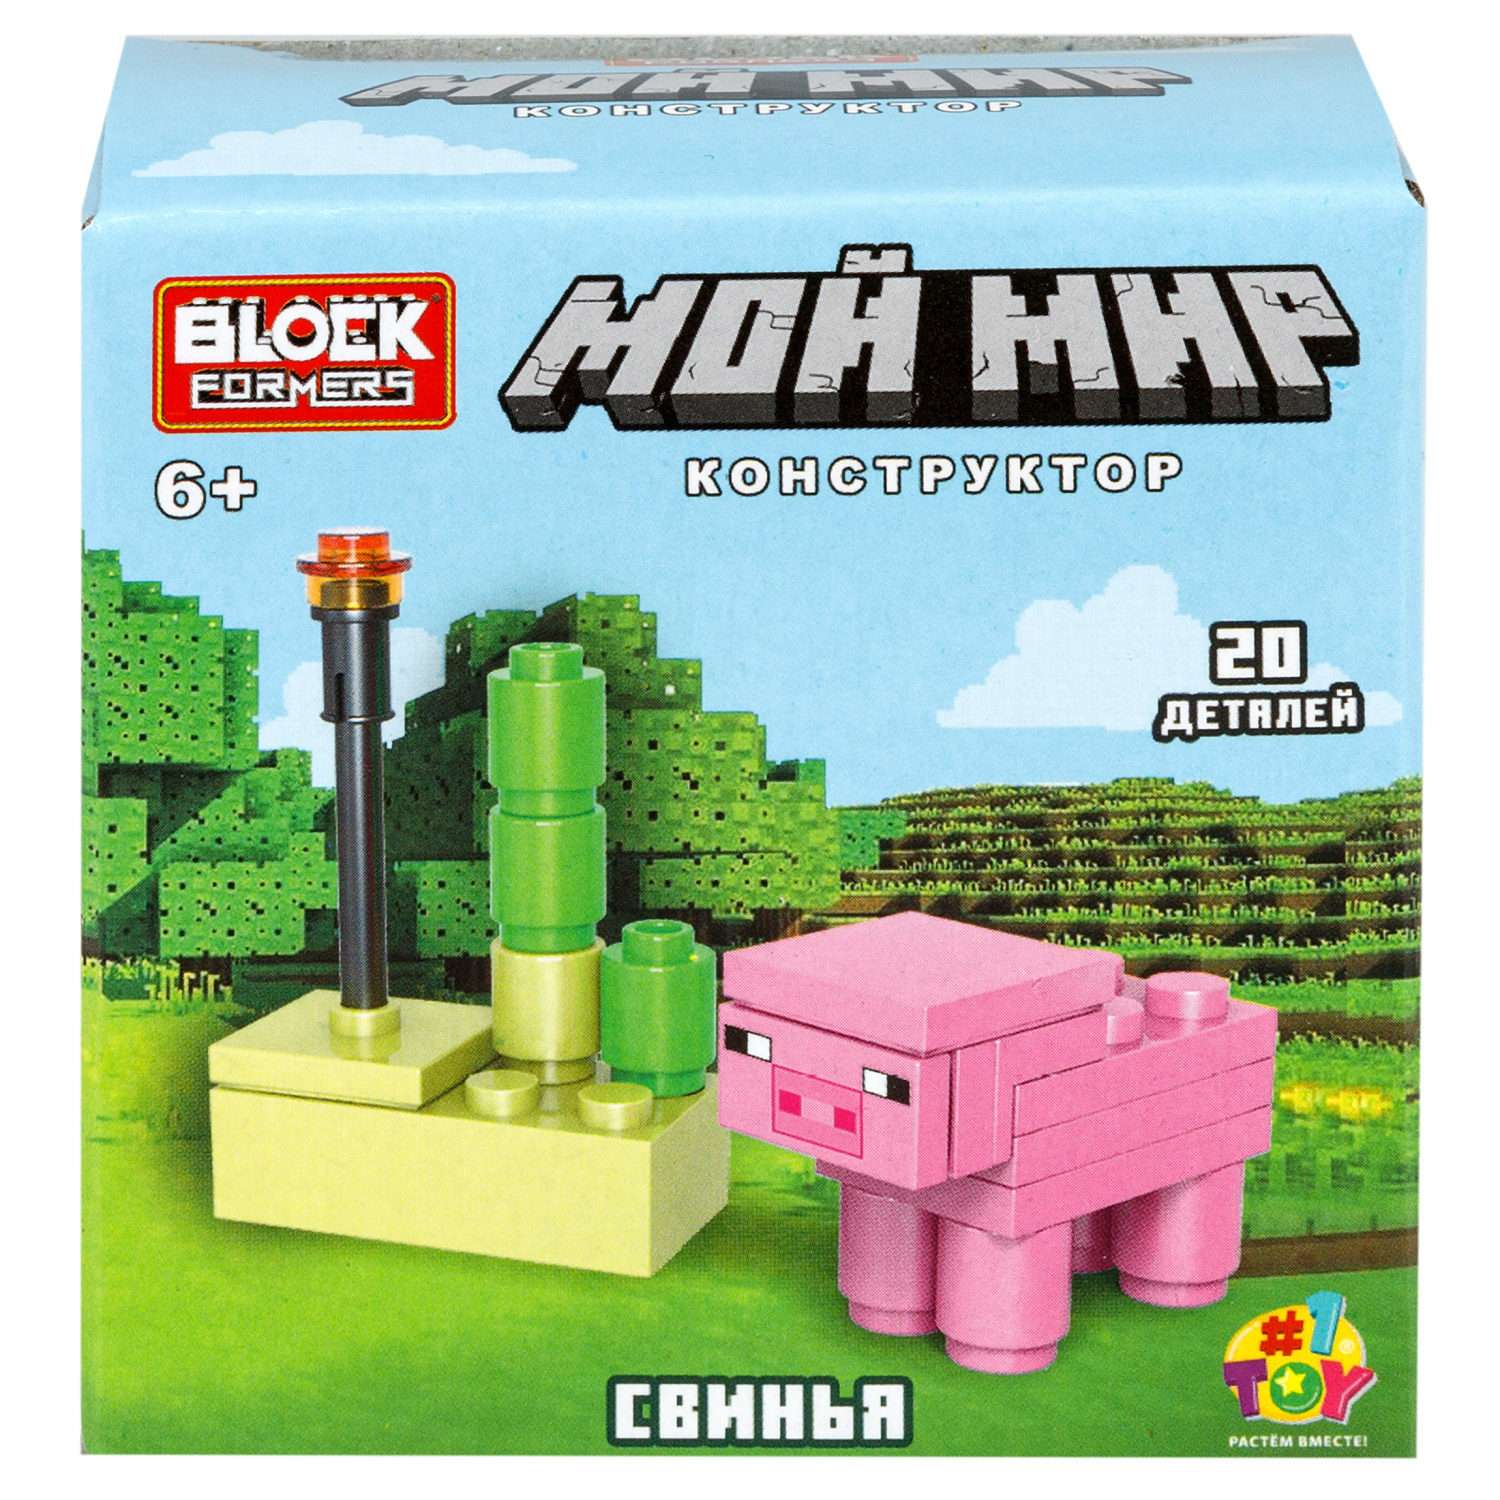 Игрушка-сюрприз 1TOY Blockformers Мой мир 3D конструктор из миниблоков - фото 20